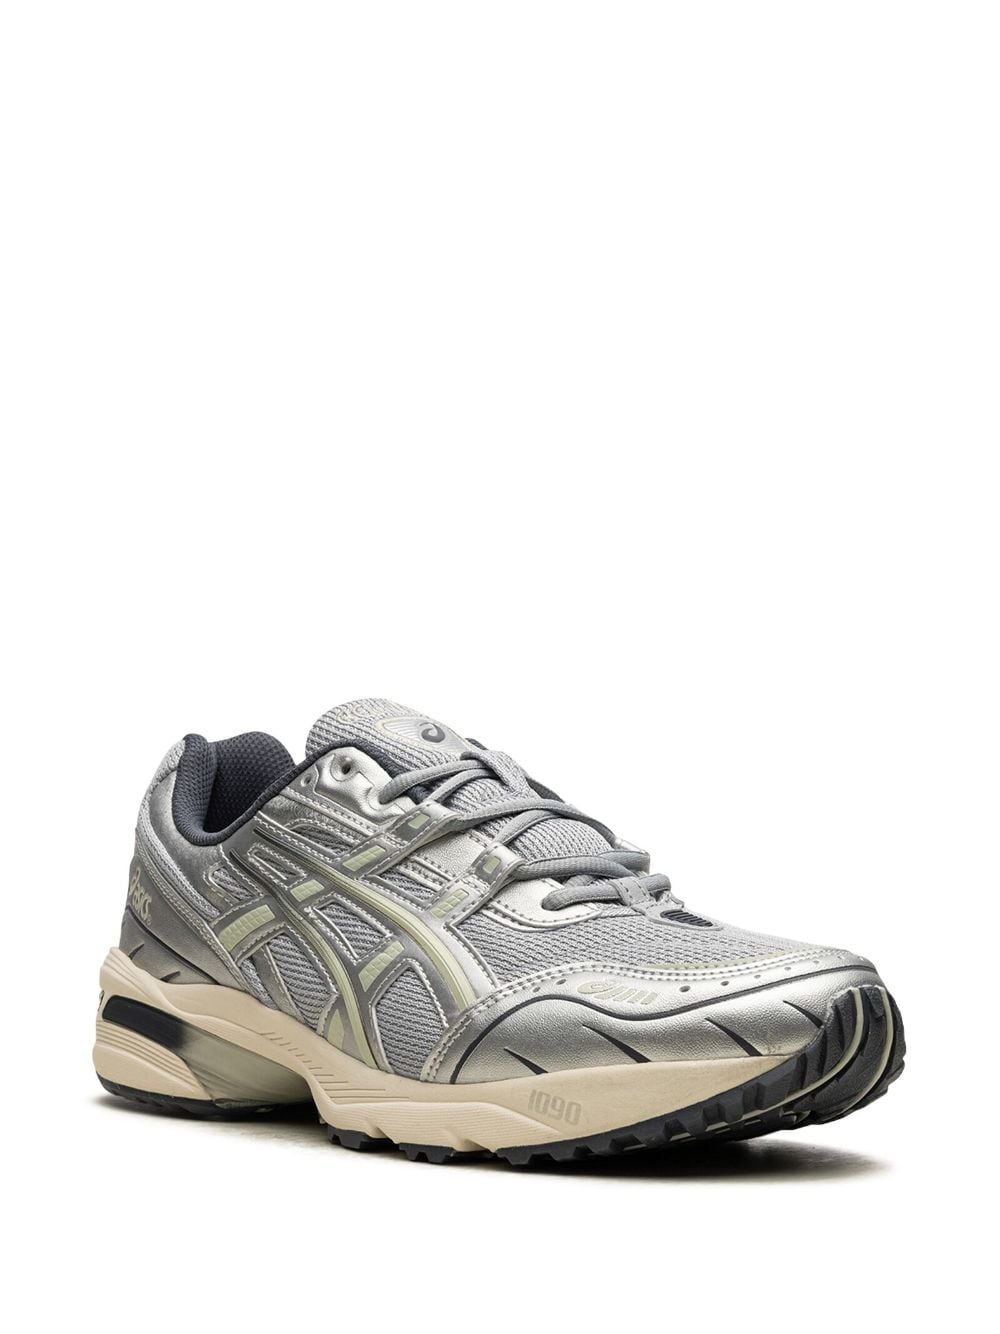 Image 2 of ASICS Gel-1090 "Piedmont Grey" sneakers